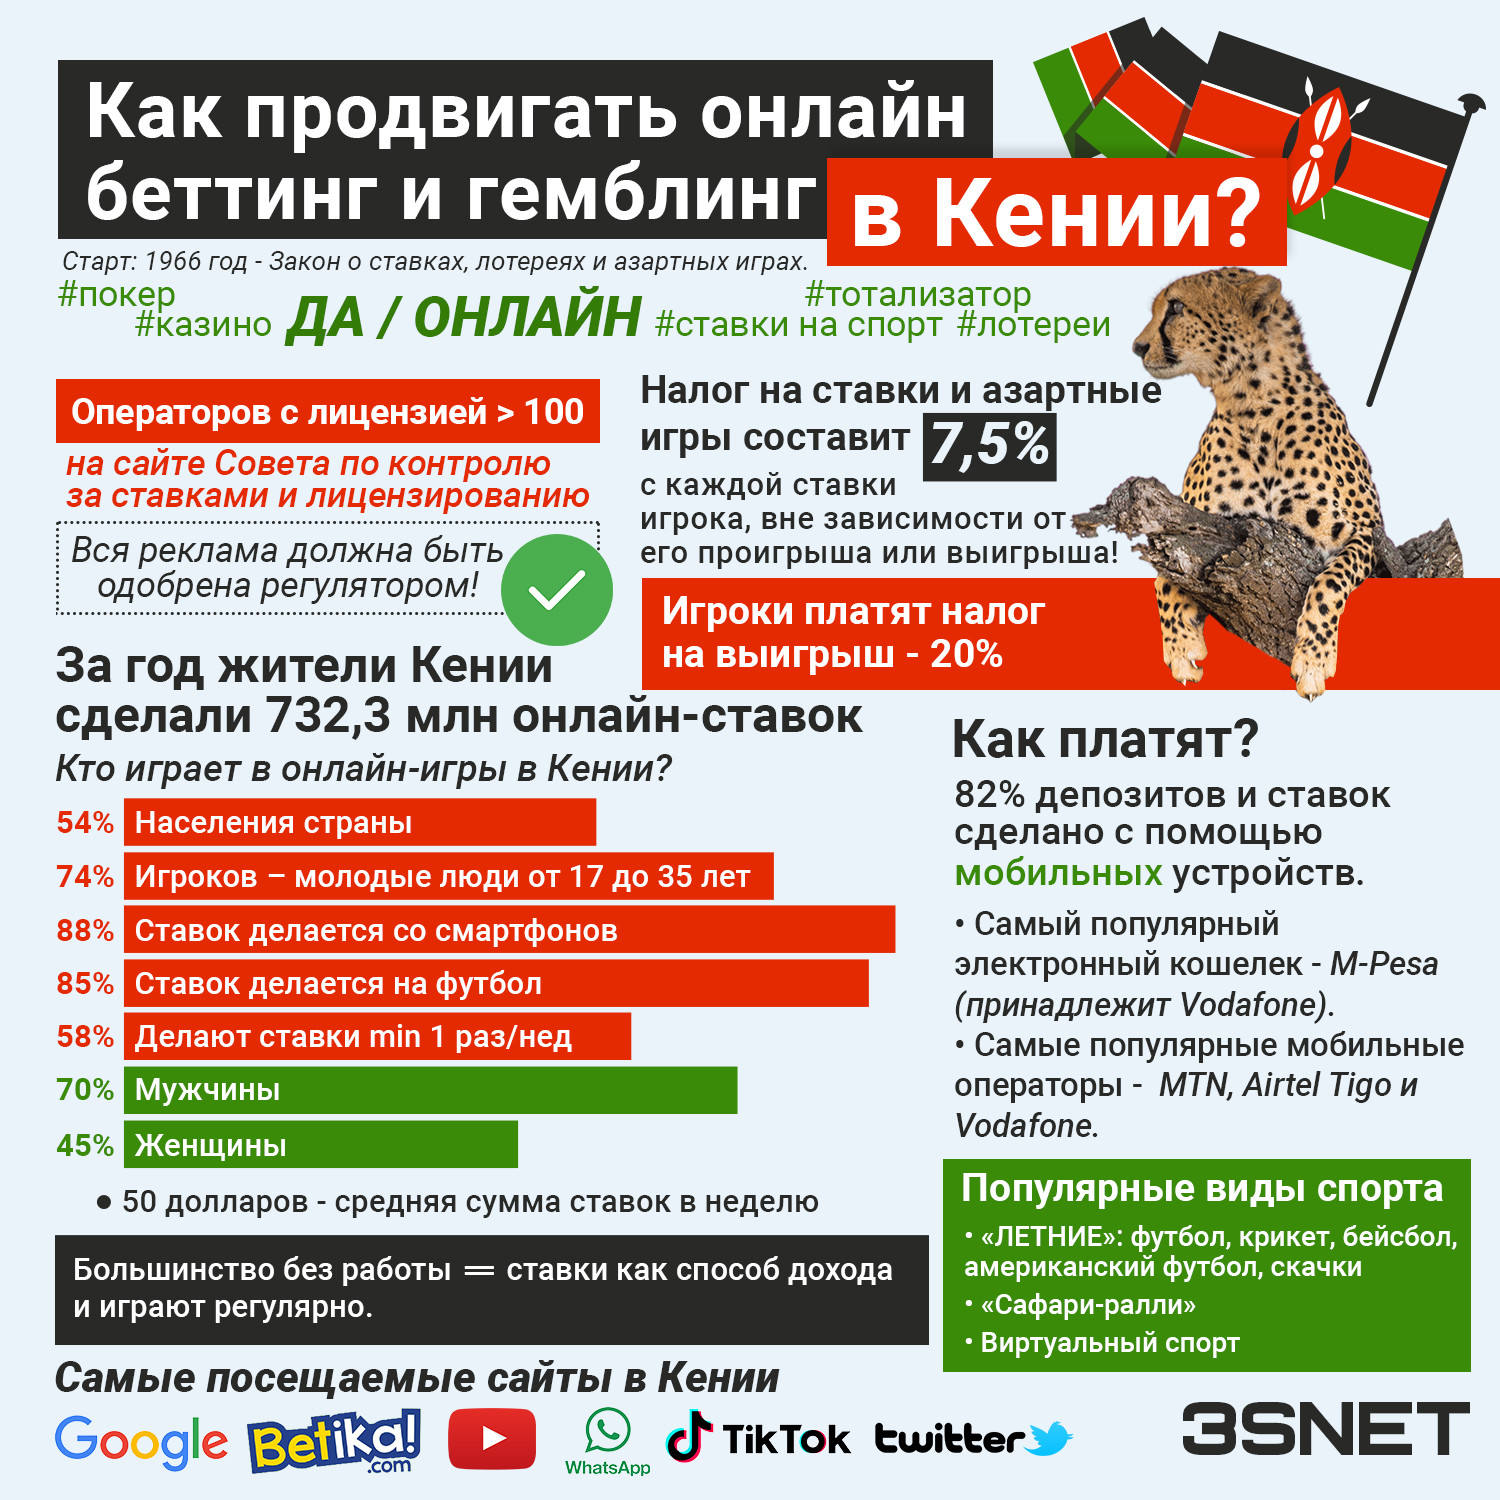 Инфографика 3SNET Все о том, как продвигать беттинг и гемблинг в Кении